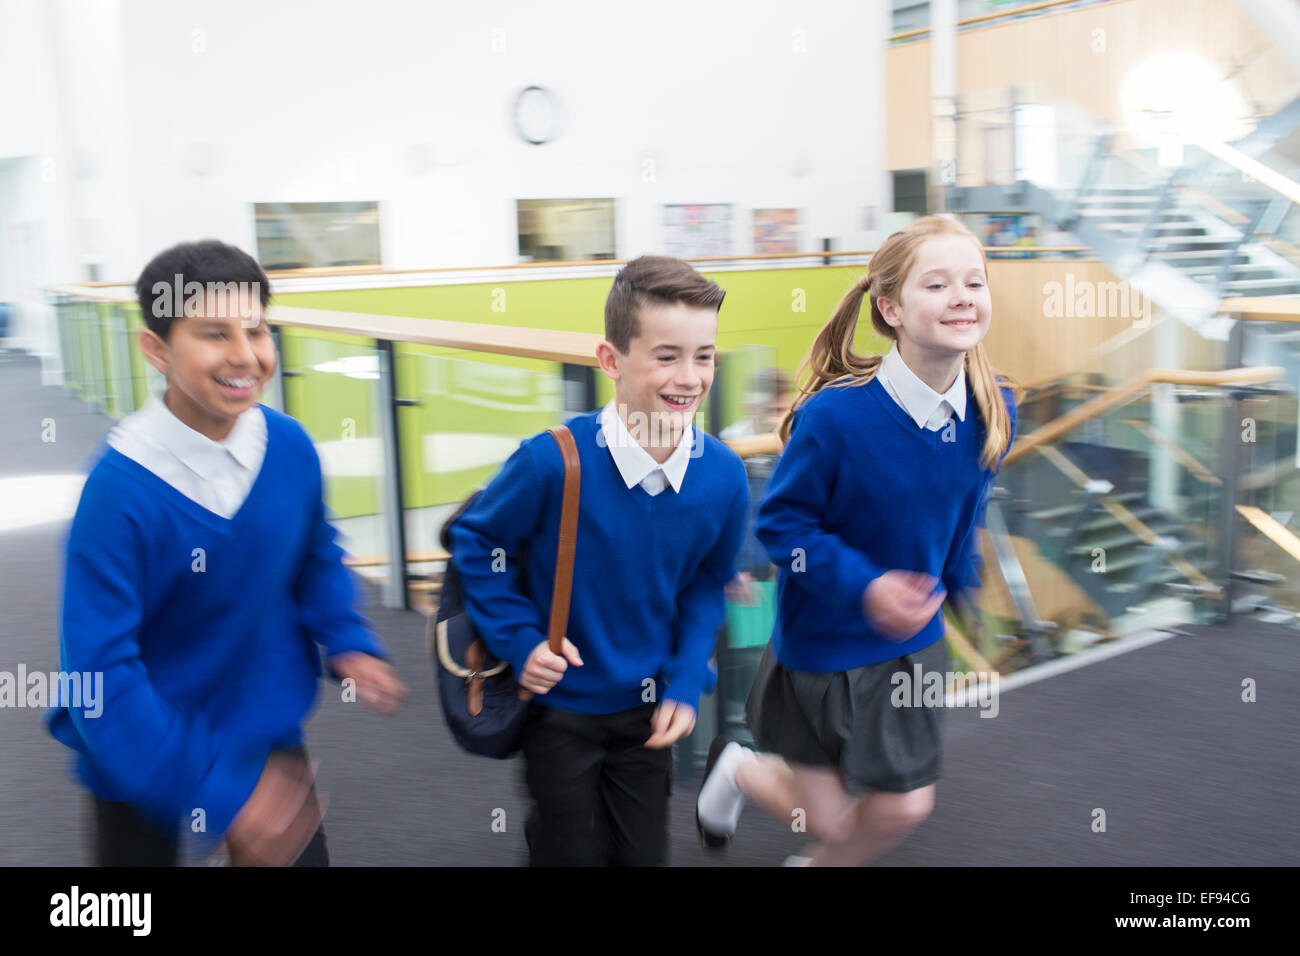 Happy pupils wearing school uniforms running in school corridor Stock Photo